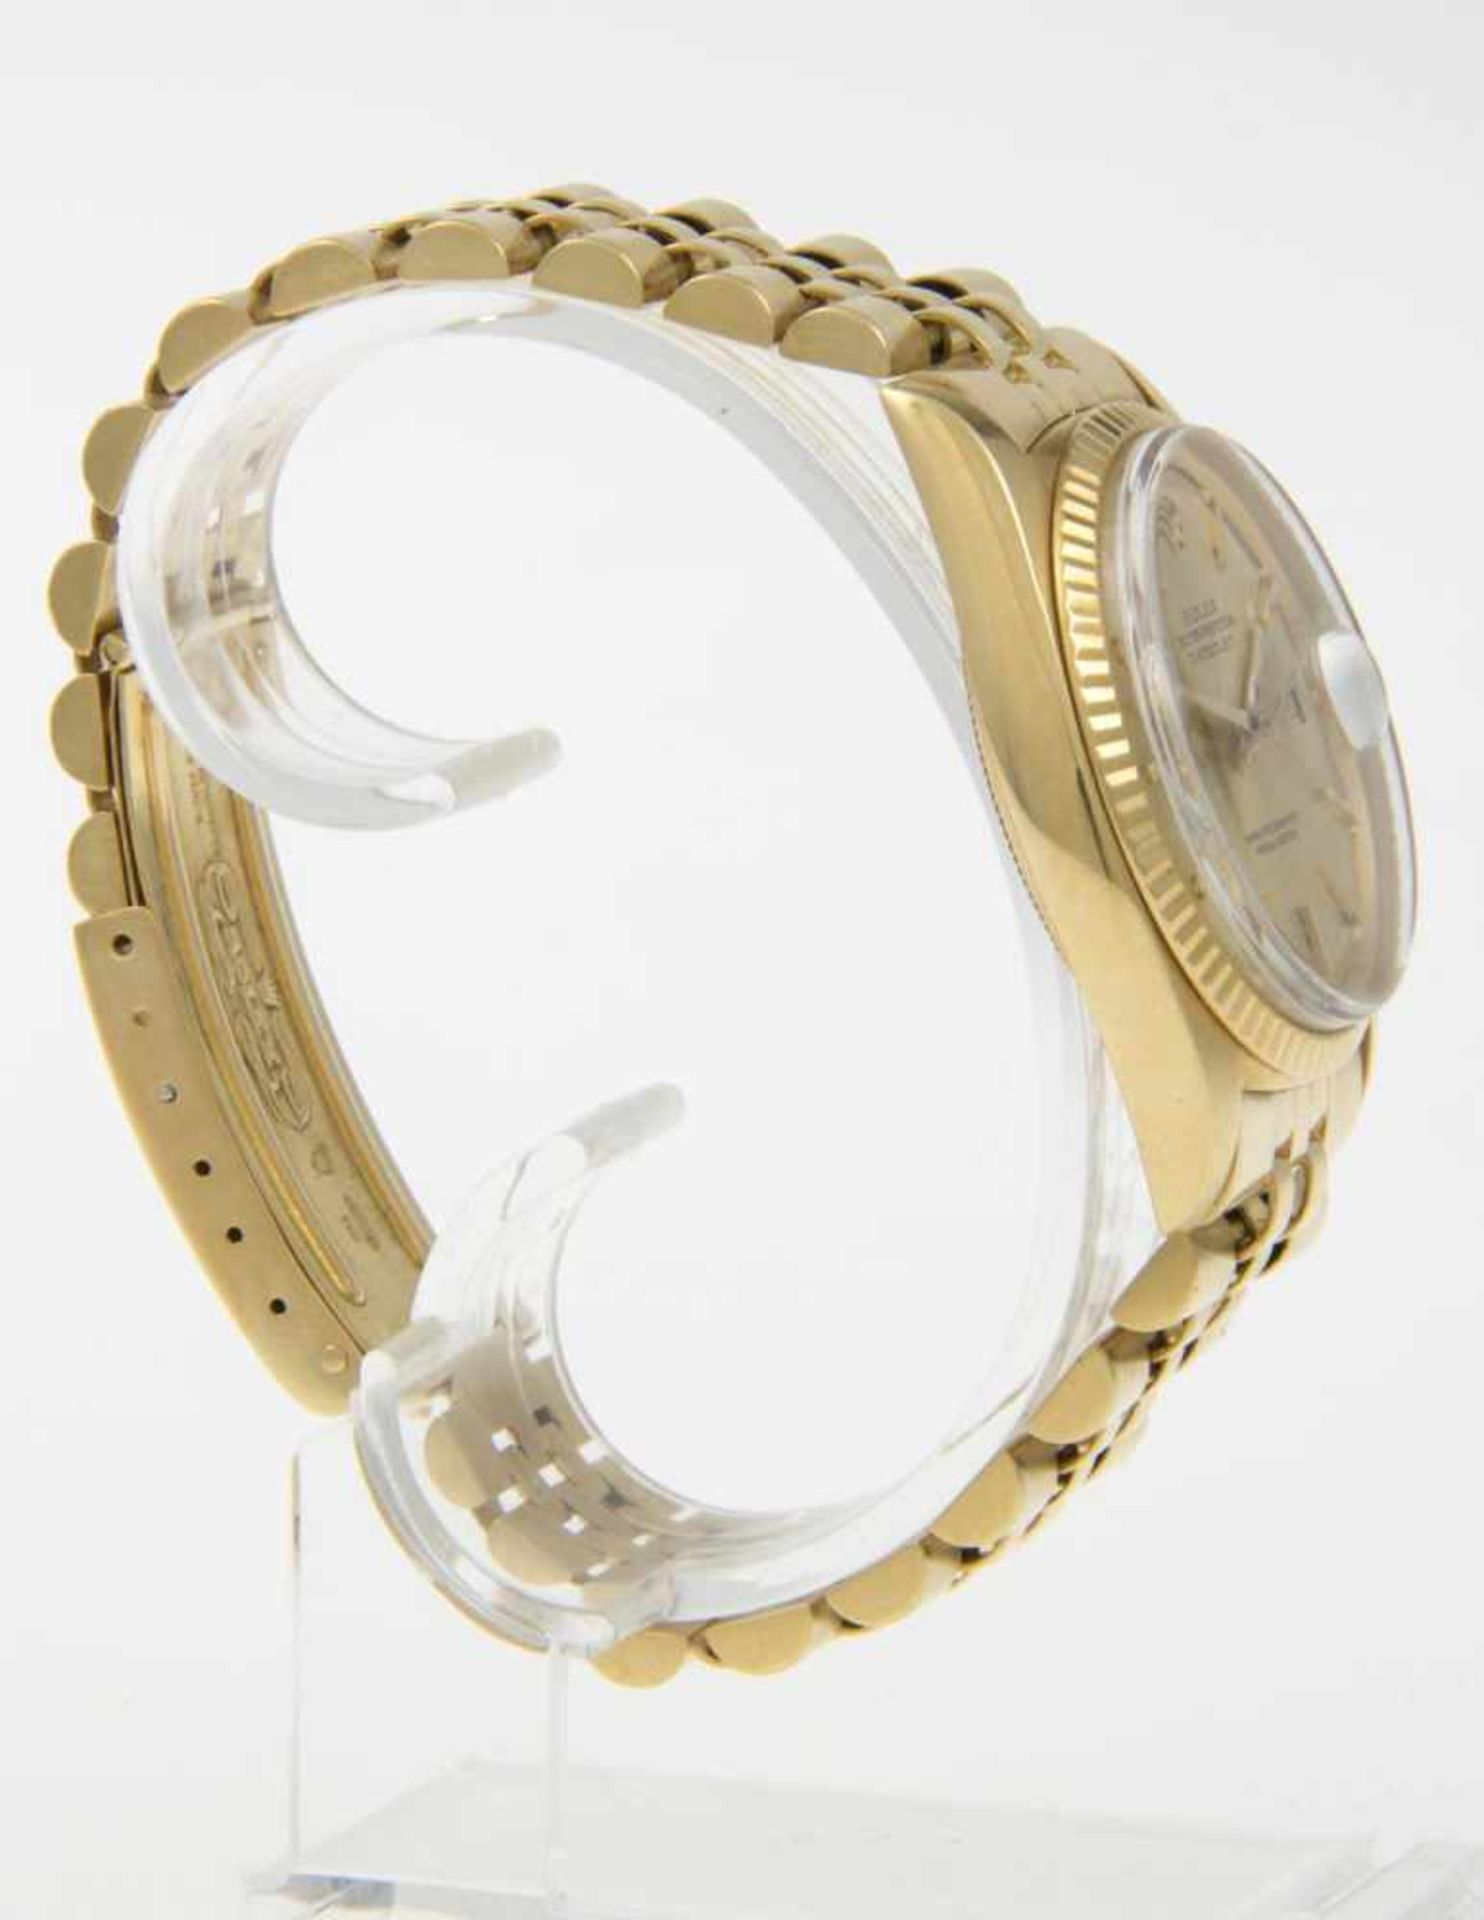 Rolex-Armbanduhr DatejustGehäuse und Armband aus Gelbgold 750. Plexiglas. Vergoldetes Zifferblatt - Bild 3 aus 4